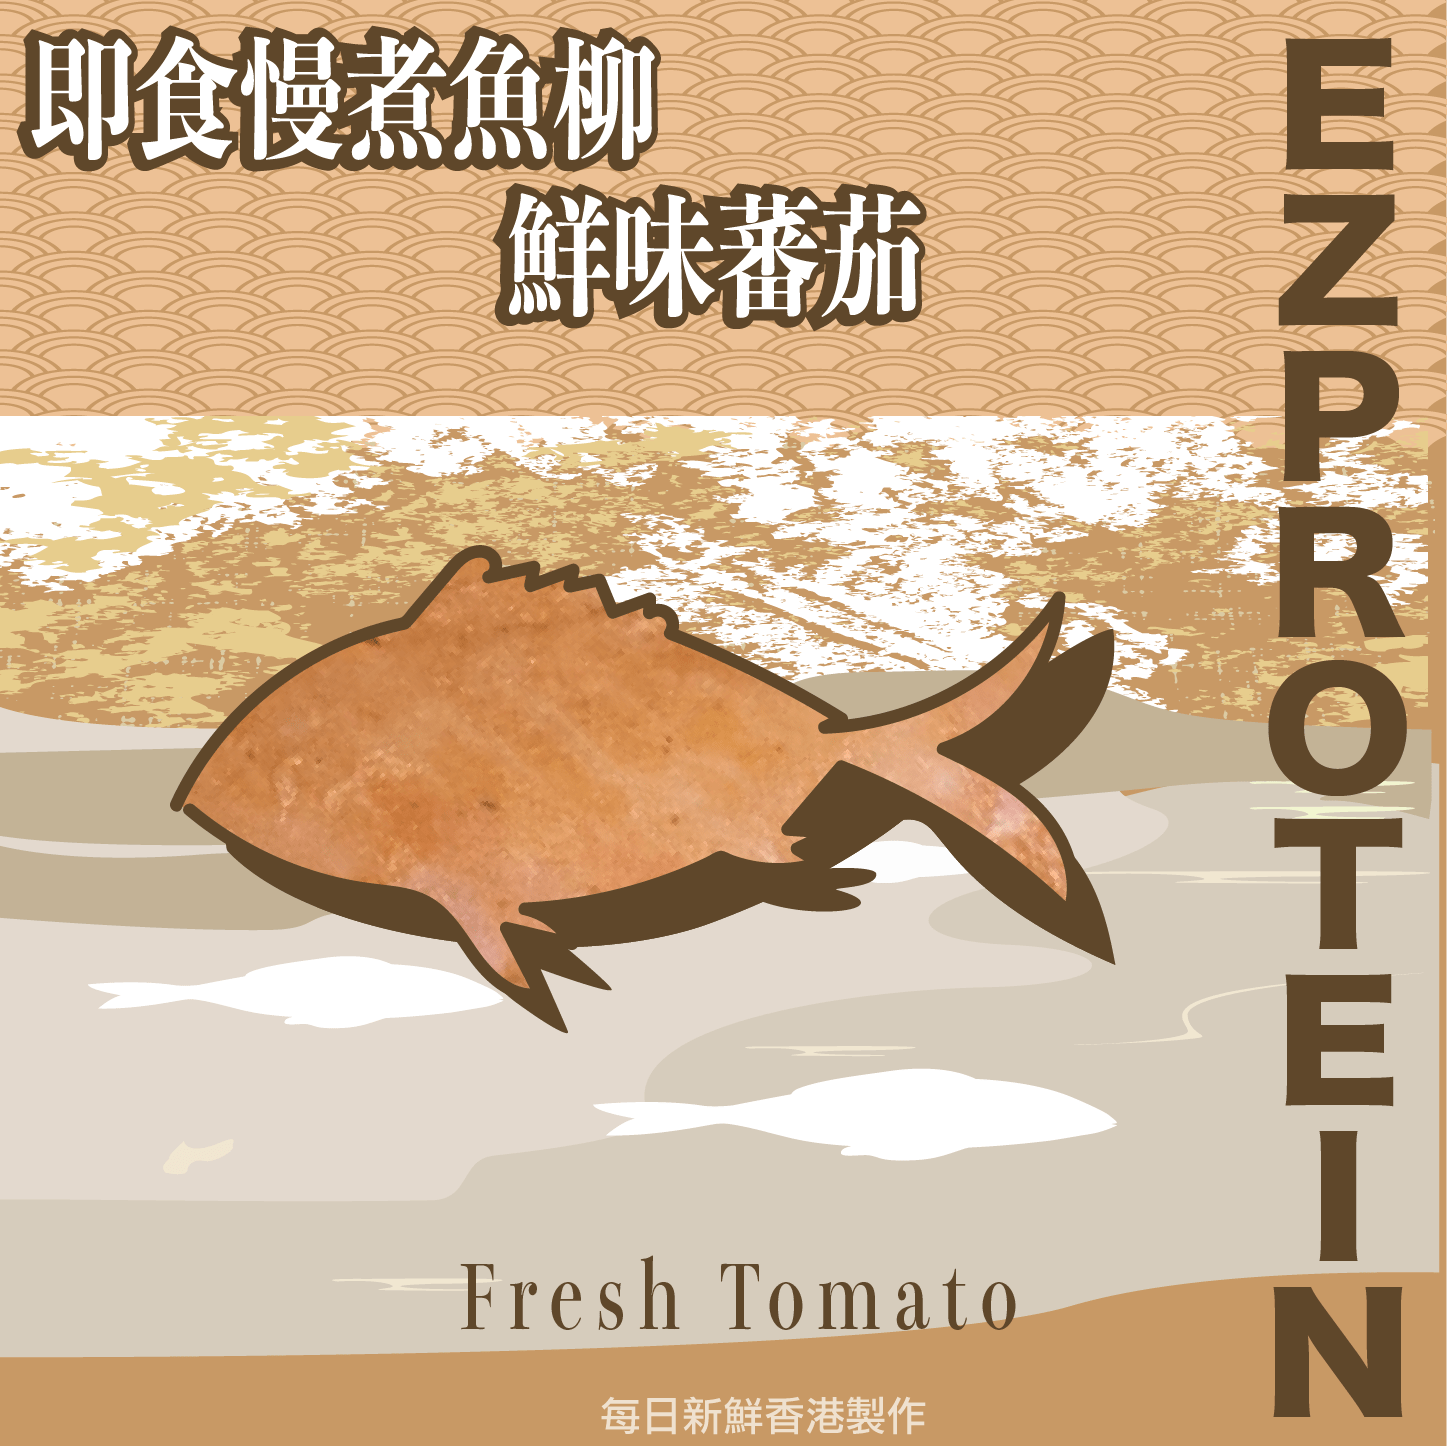 EZ PROTEIN 鮮味蕃茄魚柳｜Fresh Tomato - #heachicken#